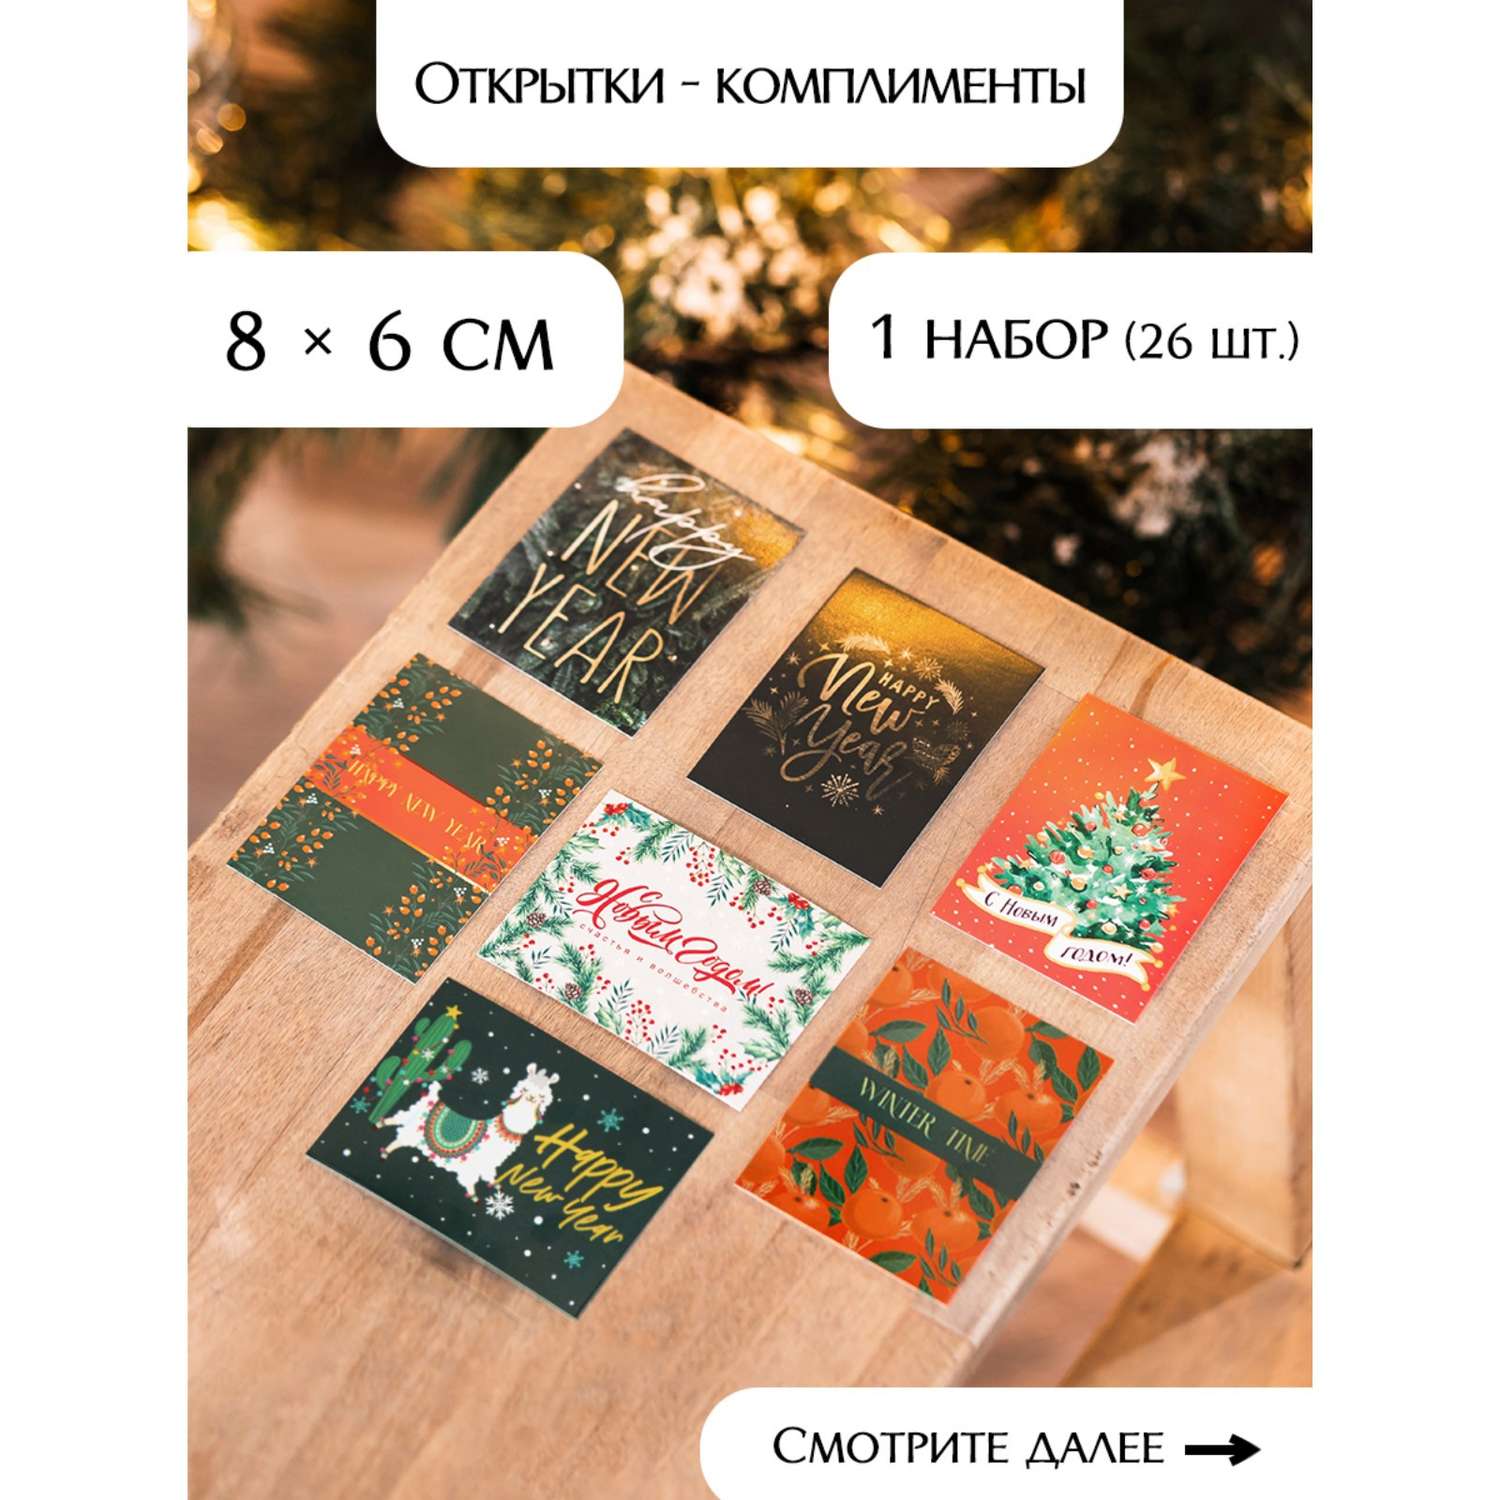 Набор Дарите Счастье открыток комплиментов«Новогодние»в наборе 26 шт. 8×6 см - фото 28